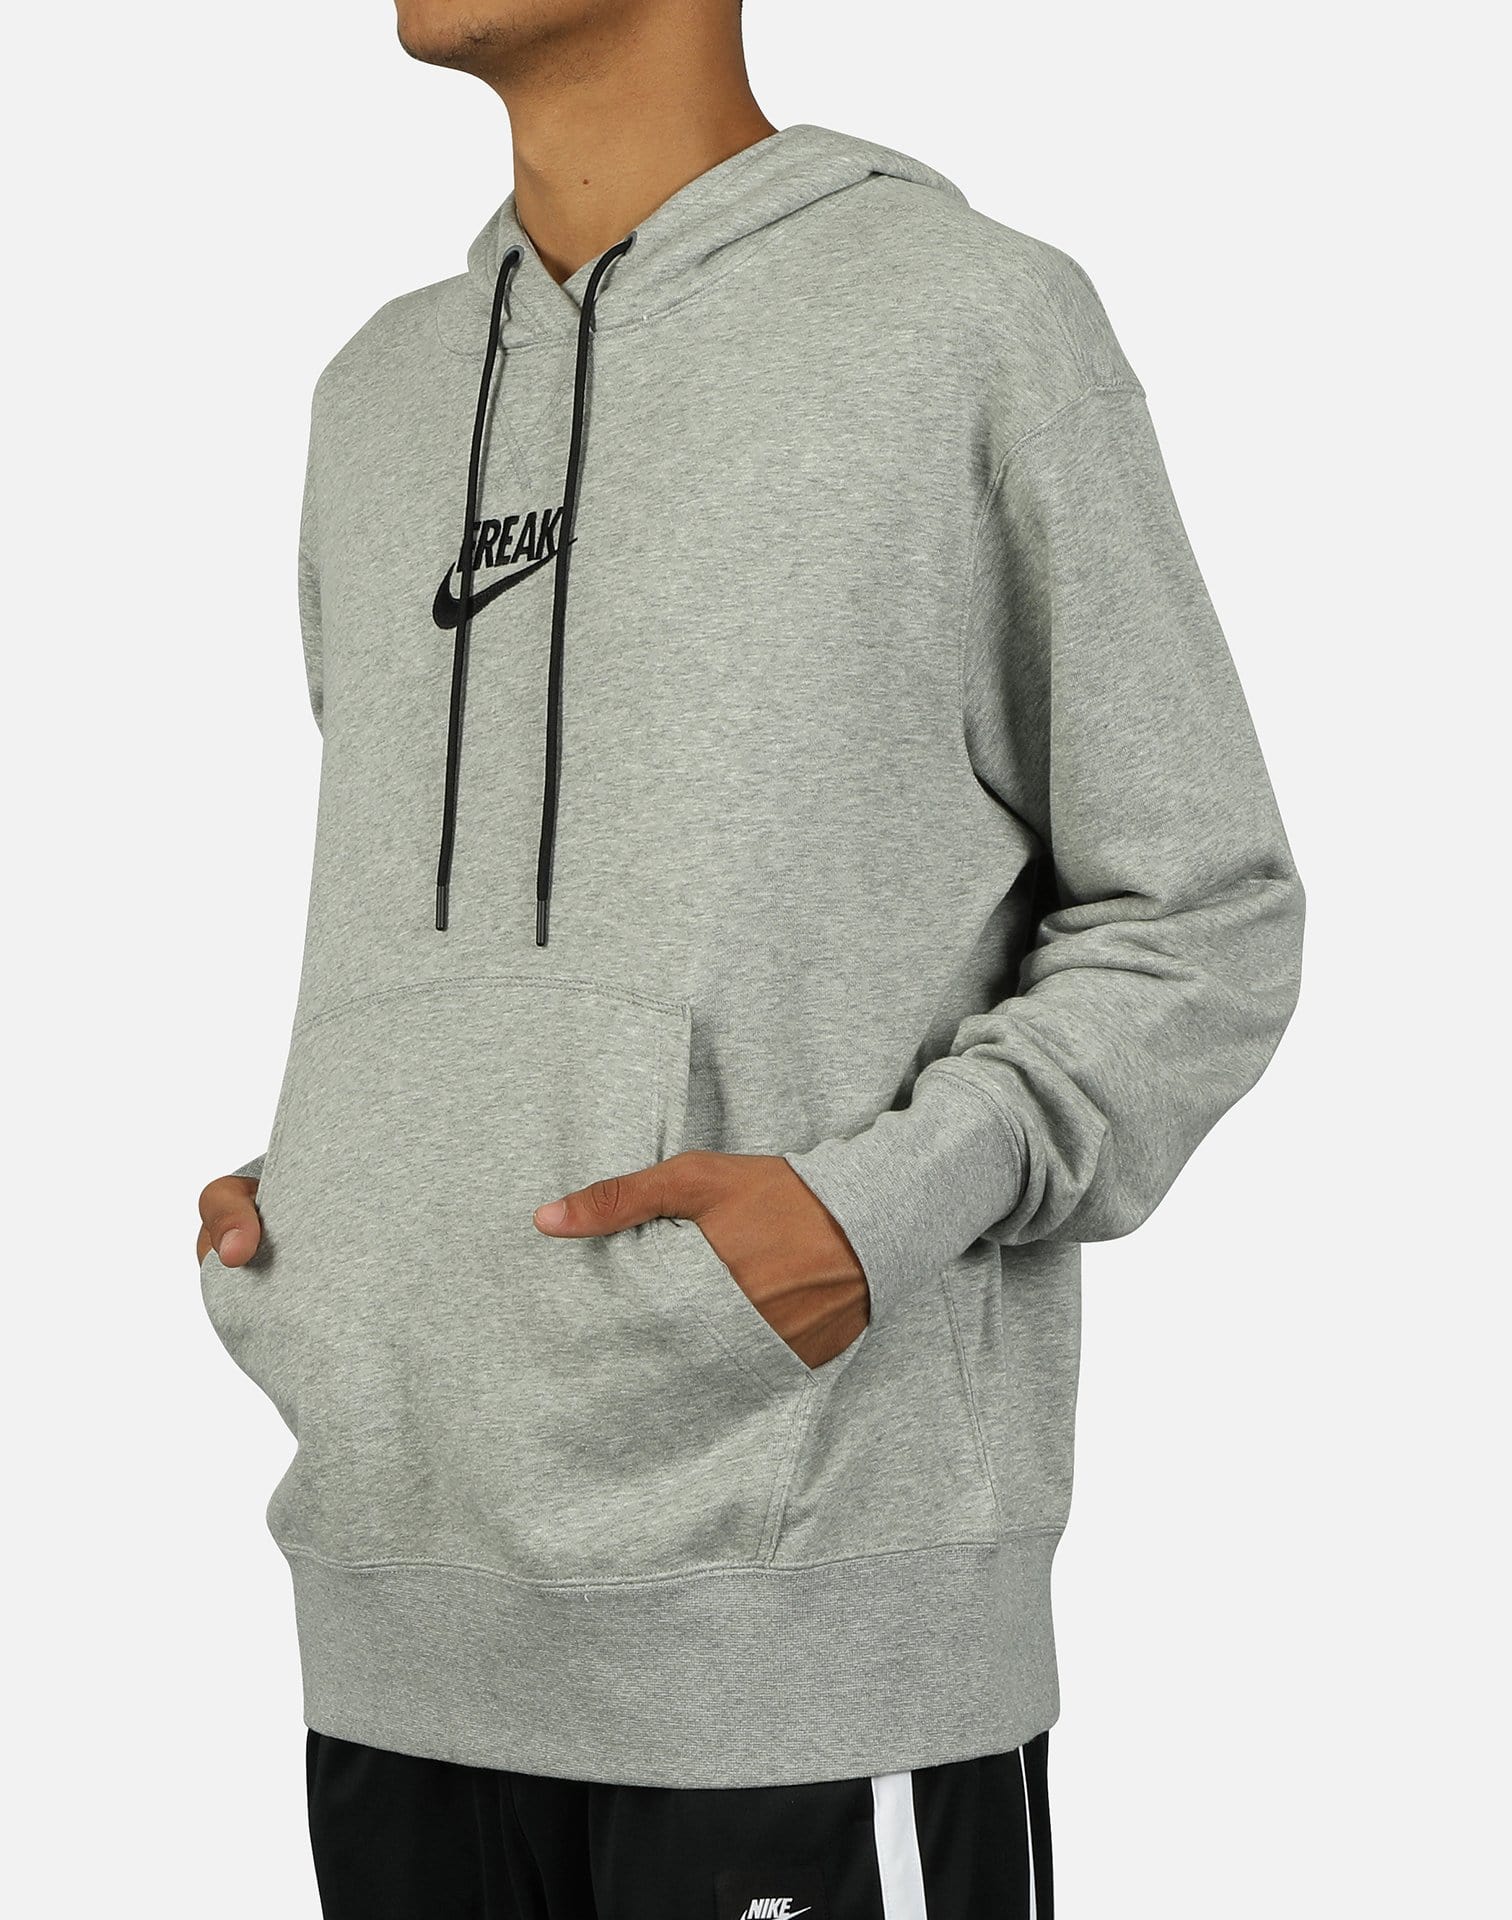 Nike Men's Giannis "Freak" Pullover Hoodie